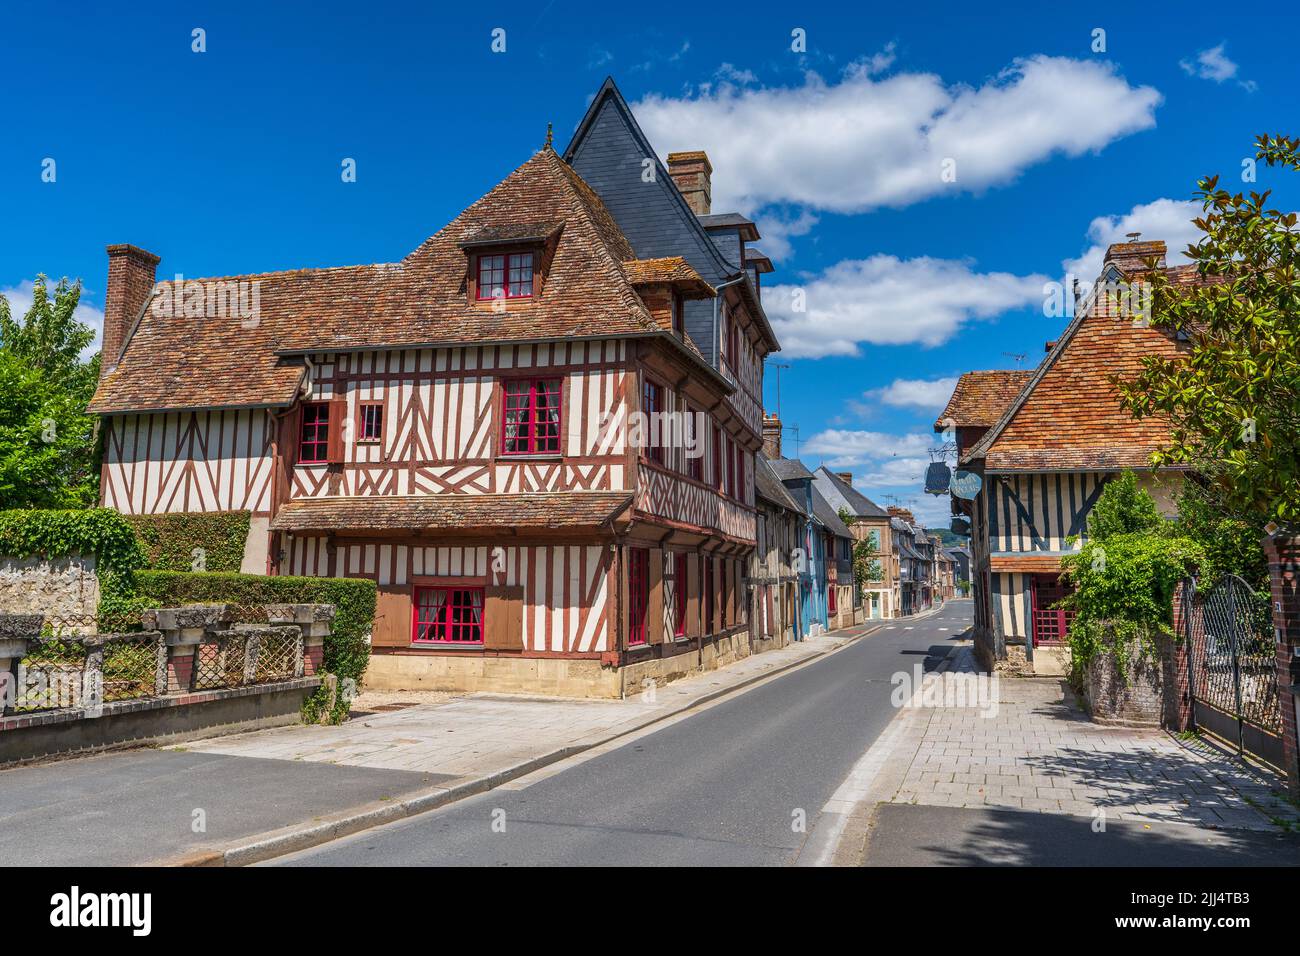 Villaggio bretone con le tipiche abitazioni a traliccio (France) Stock Photo